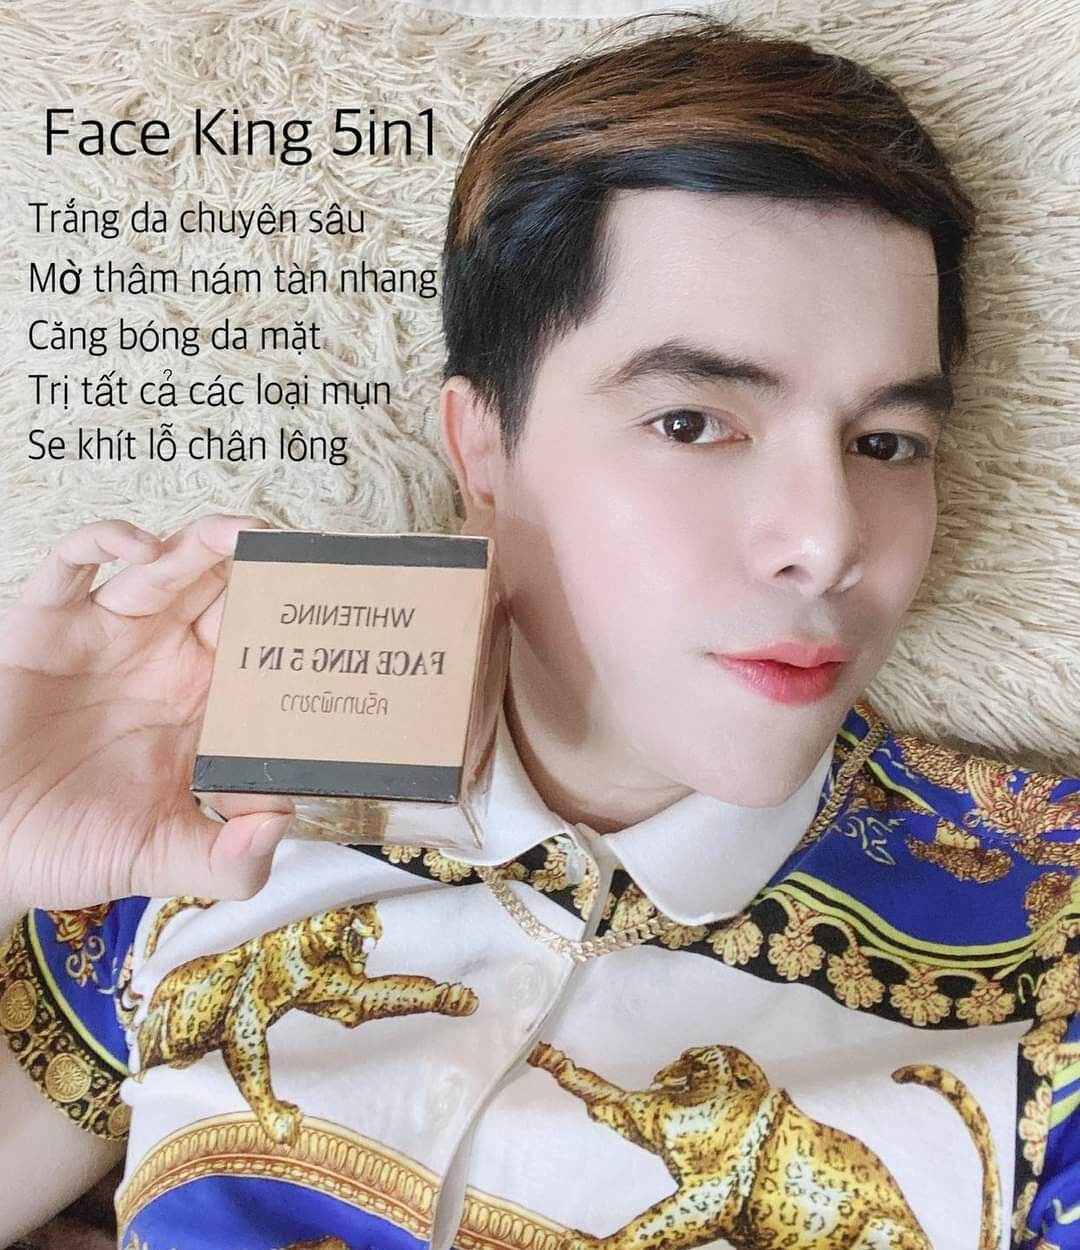 kem face king 5 in 1 thai lan, giảm mụn, nám, trắng da